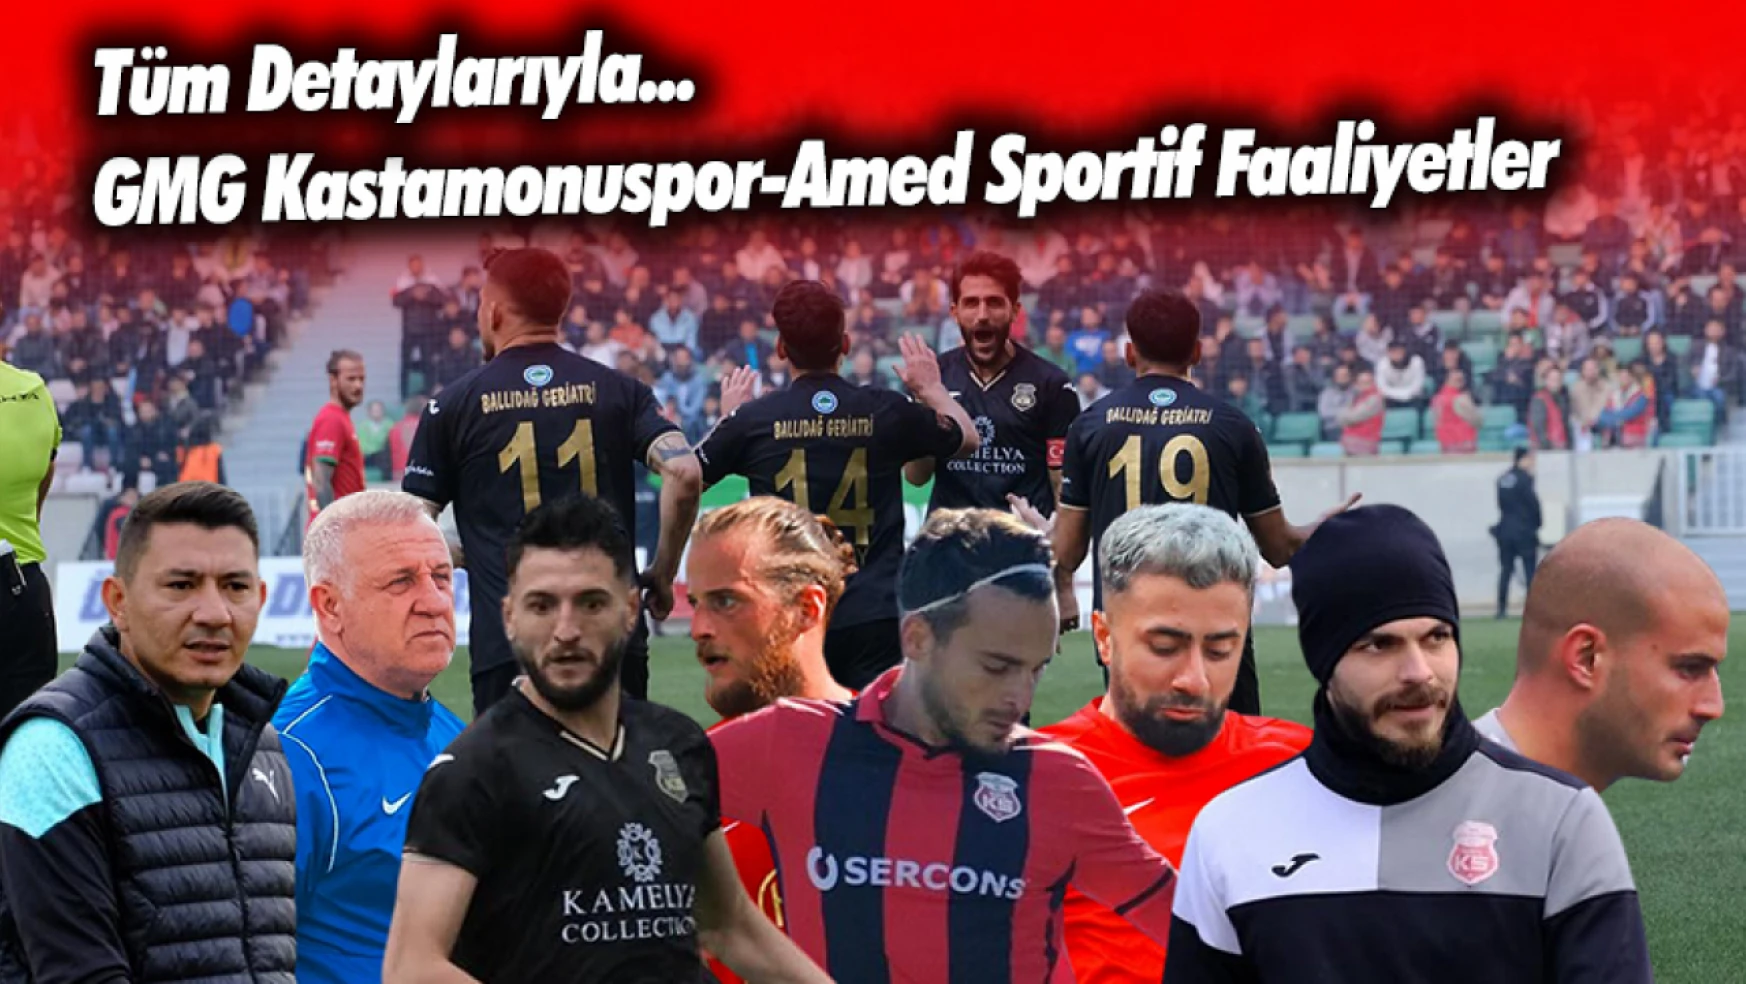 Dev Maç, Büyük Gün, Tüm Detaylar: GMG Kastamonuspor-Amed Sportif Faaliyetler